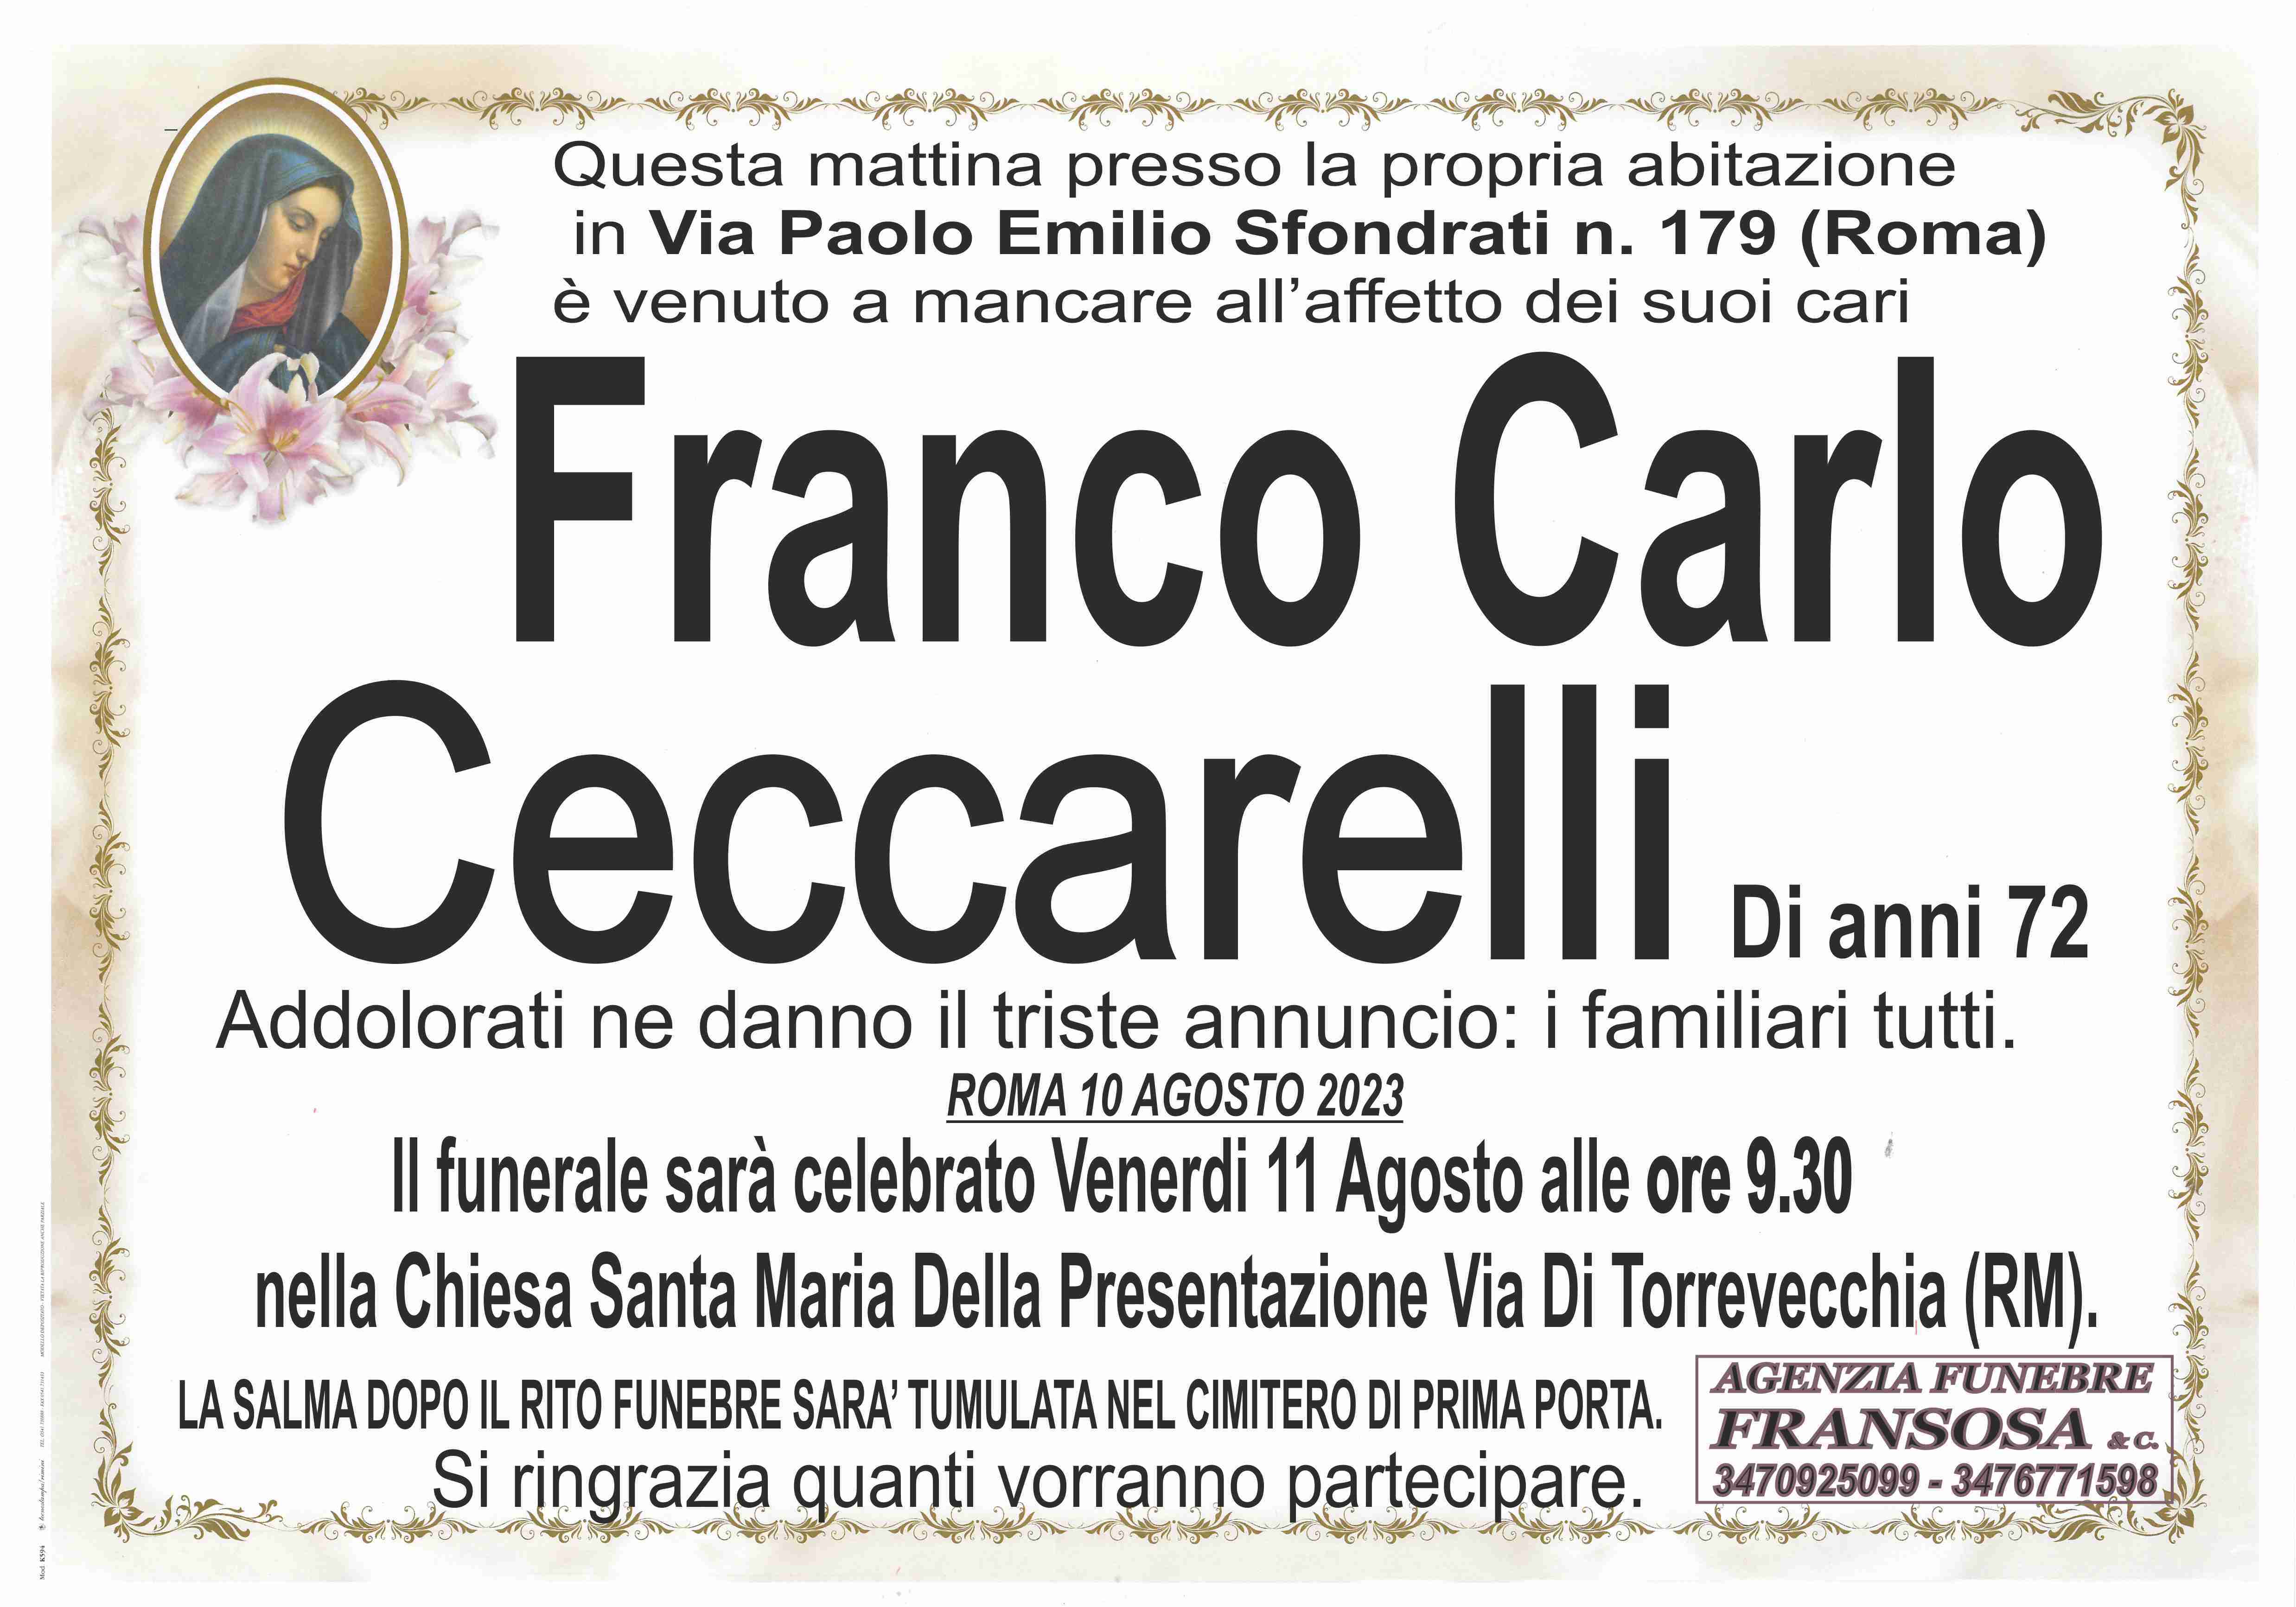 Franco Carlo Ceccarelli